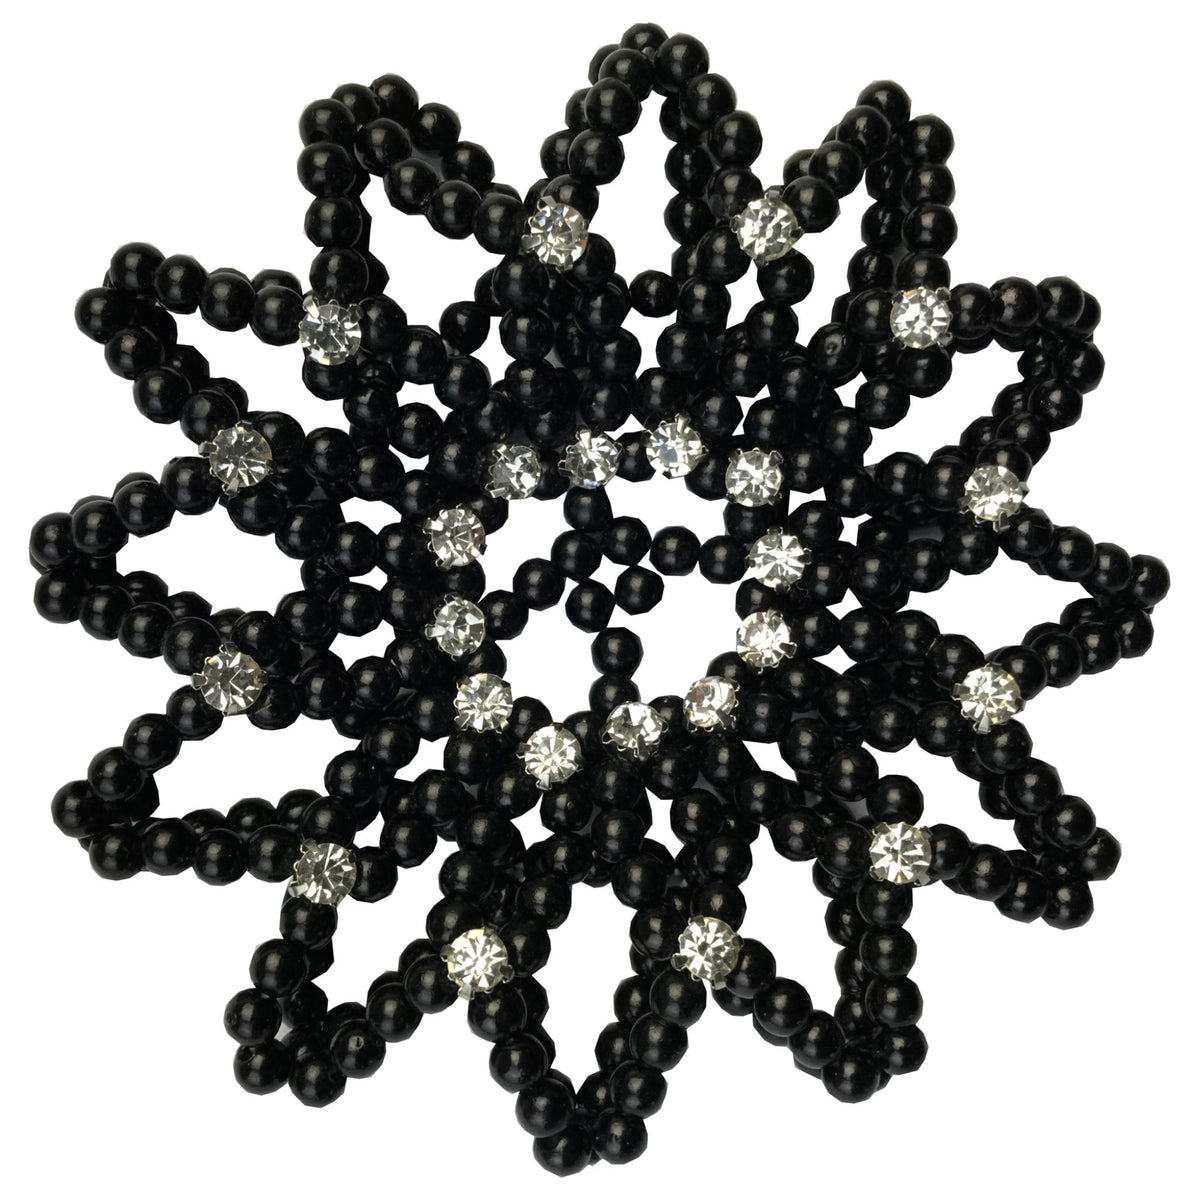 Black Diamante Hair Net Against A White Background.